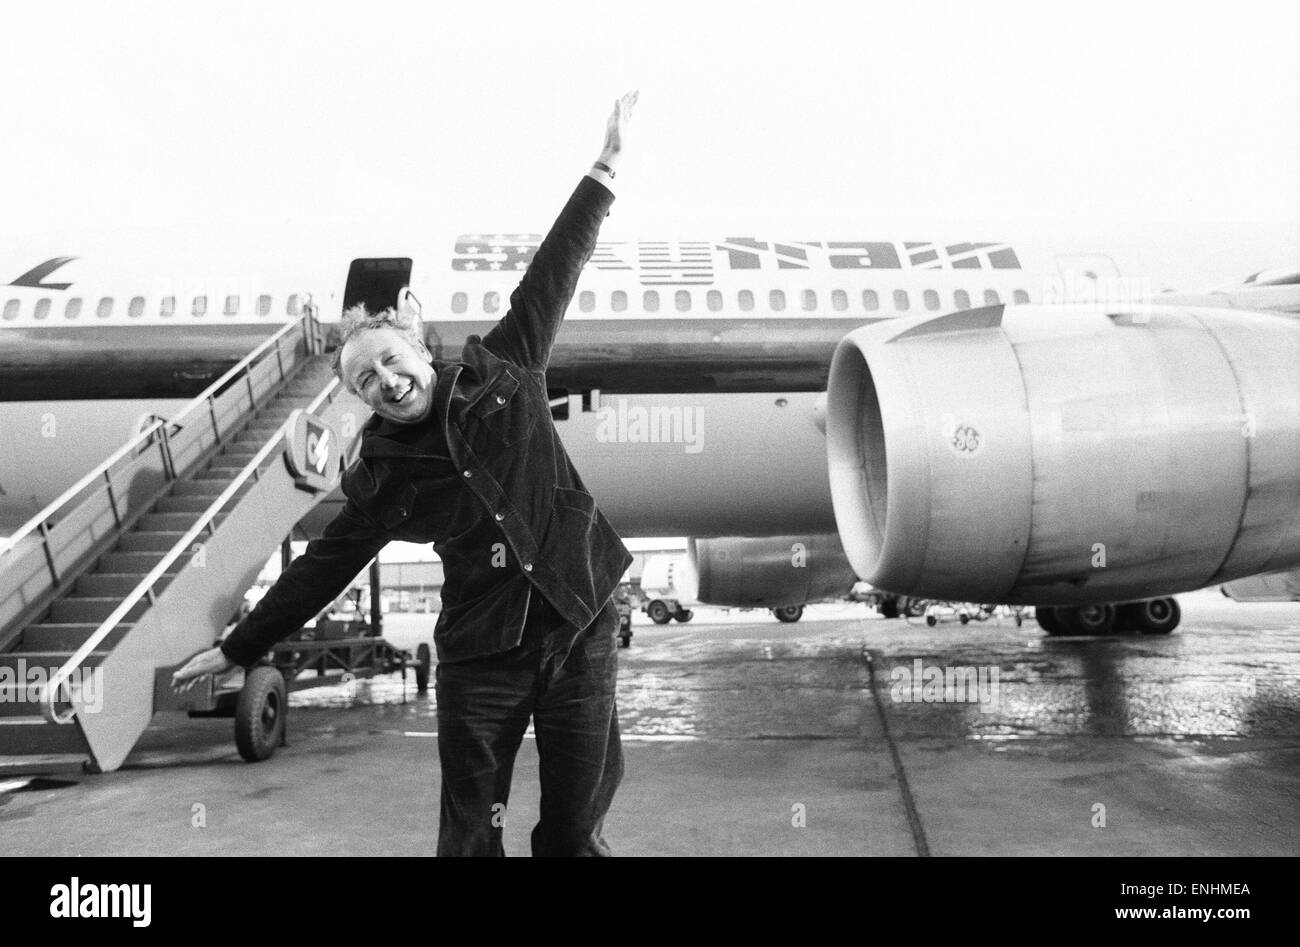 Leiter der Laker Airways Freddie Laker in jubelnder Stimmung auf der Landebahn am Flughafen Gatwick, am Vortag des Erstfluges von seinem transatlantischen Skytrain-Dienst startet vom Flughafen Gatwick nach New York. Der Flug wird 345 Passagieren Platz und kostet £59 für Stockfoto